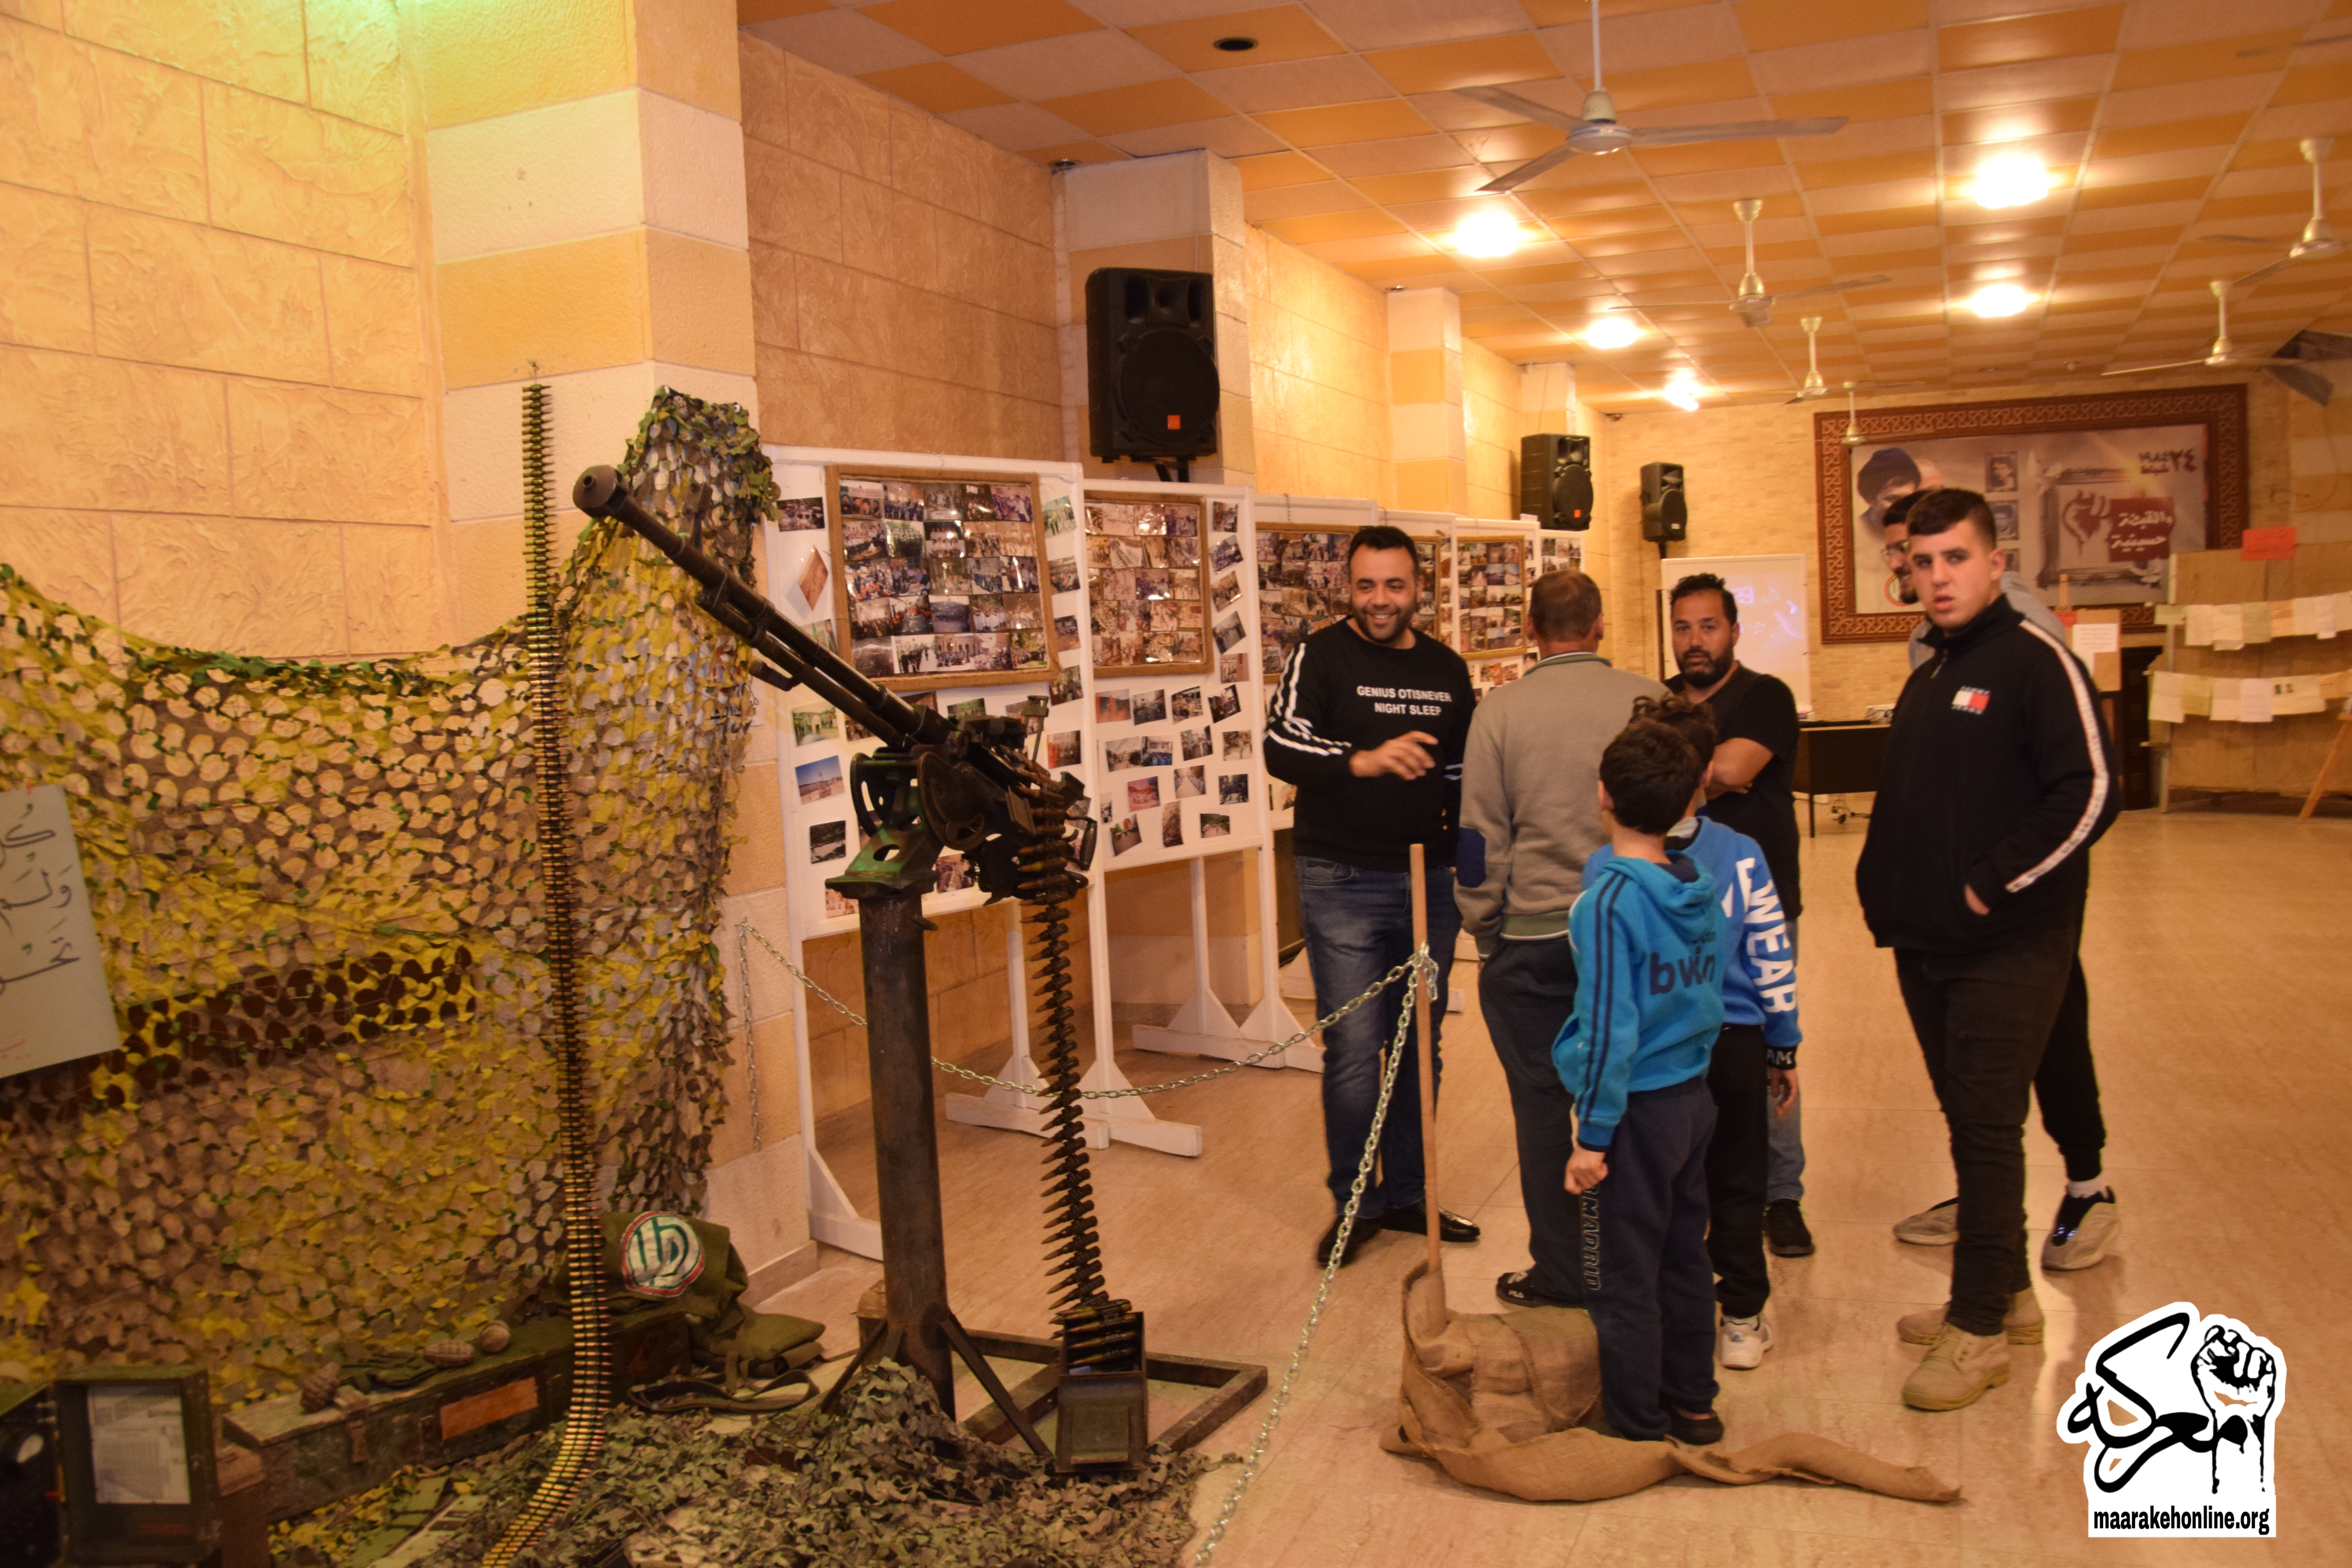 بالصور:معرض أحياء يستبشرون الذي يحاكي تاريخ معركة الجهادي